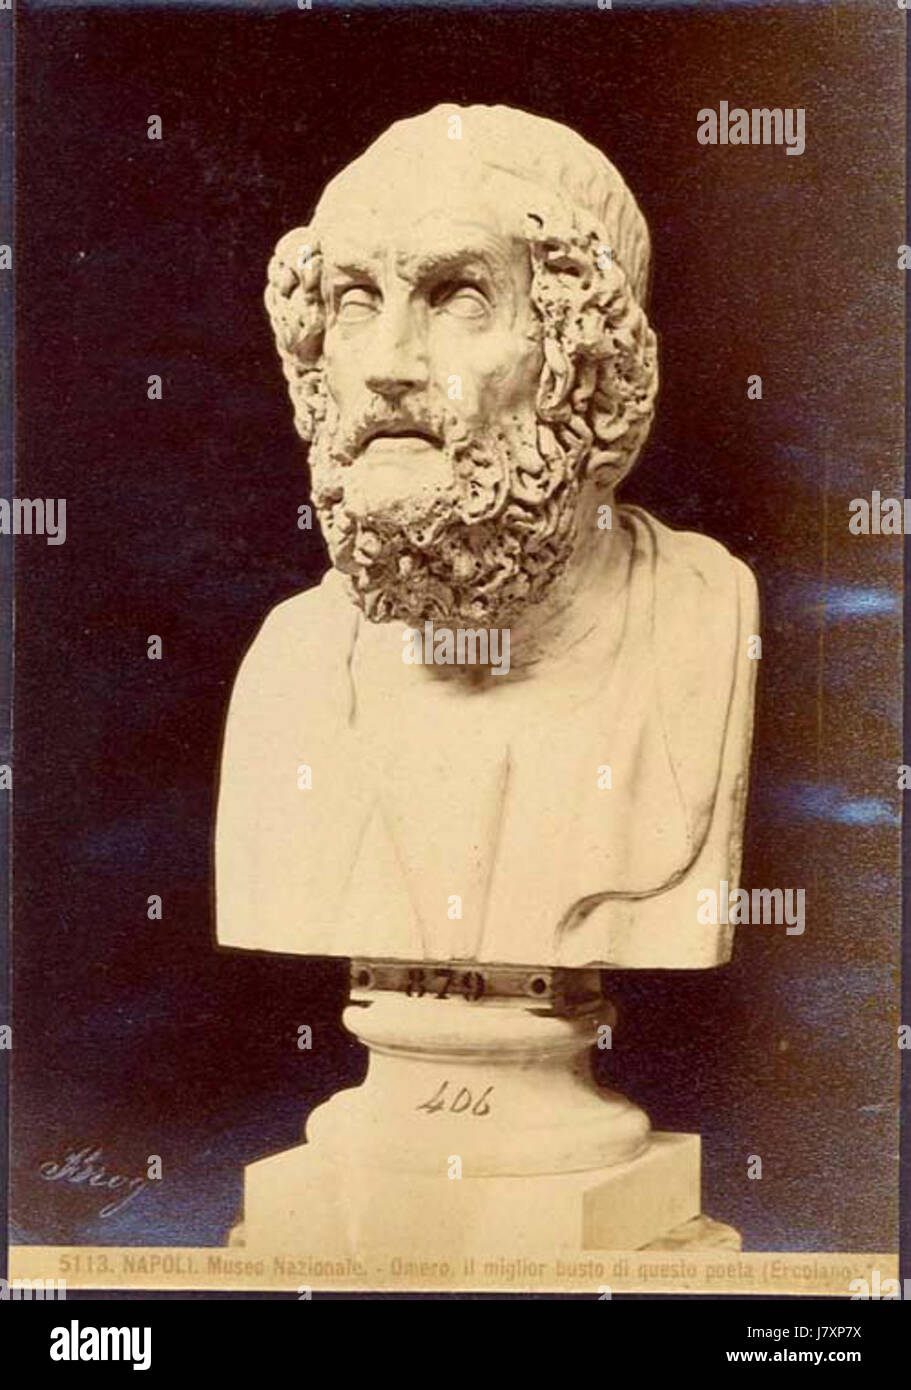 Brogi, Giacomo (1822 1881)   5113   Napoli, Museo nazionale. Omero. il miglior busto di questo poeta (Ercolano) Stock Photo